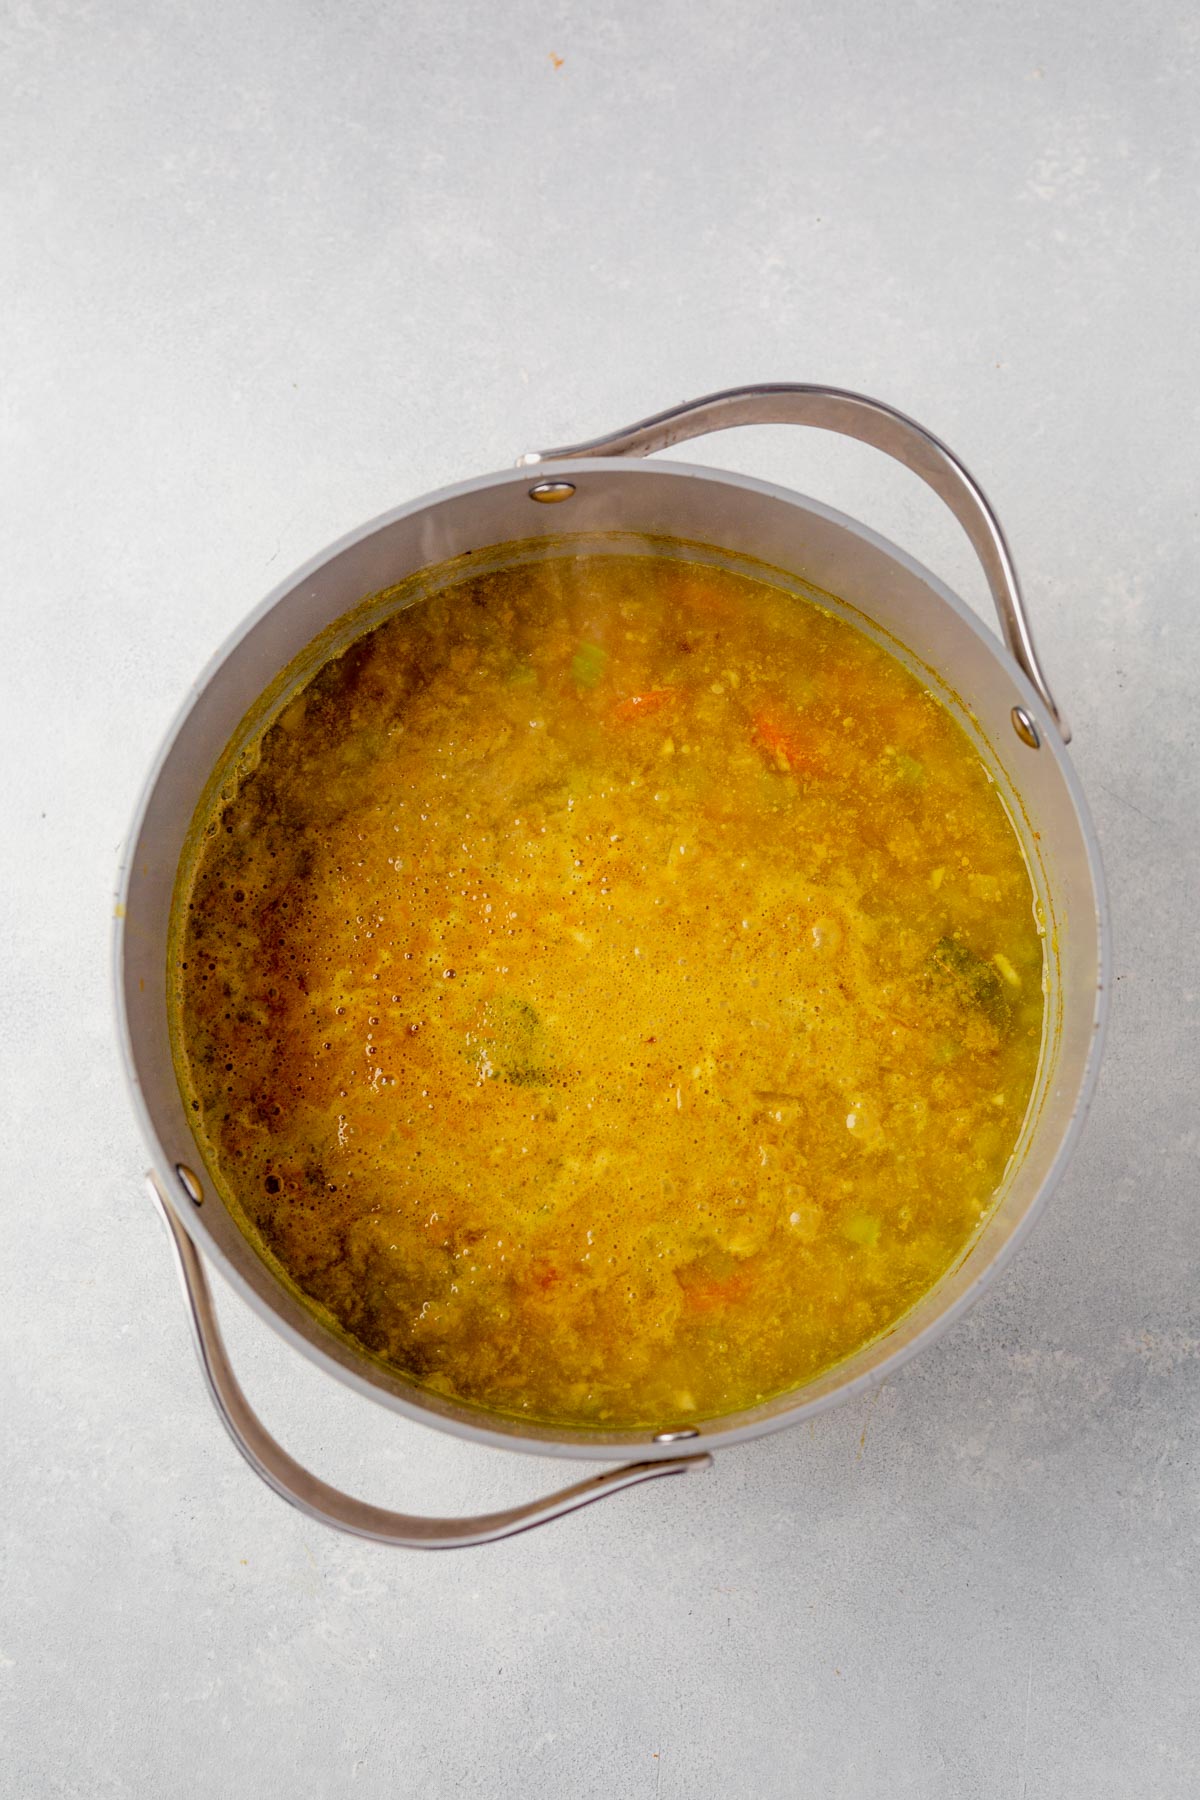 lemon lentil soup cooking in a stock pot